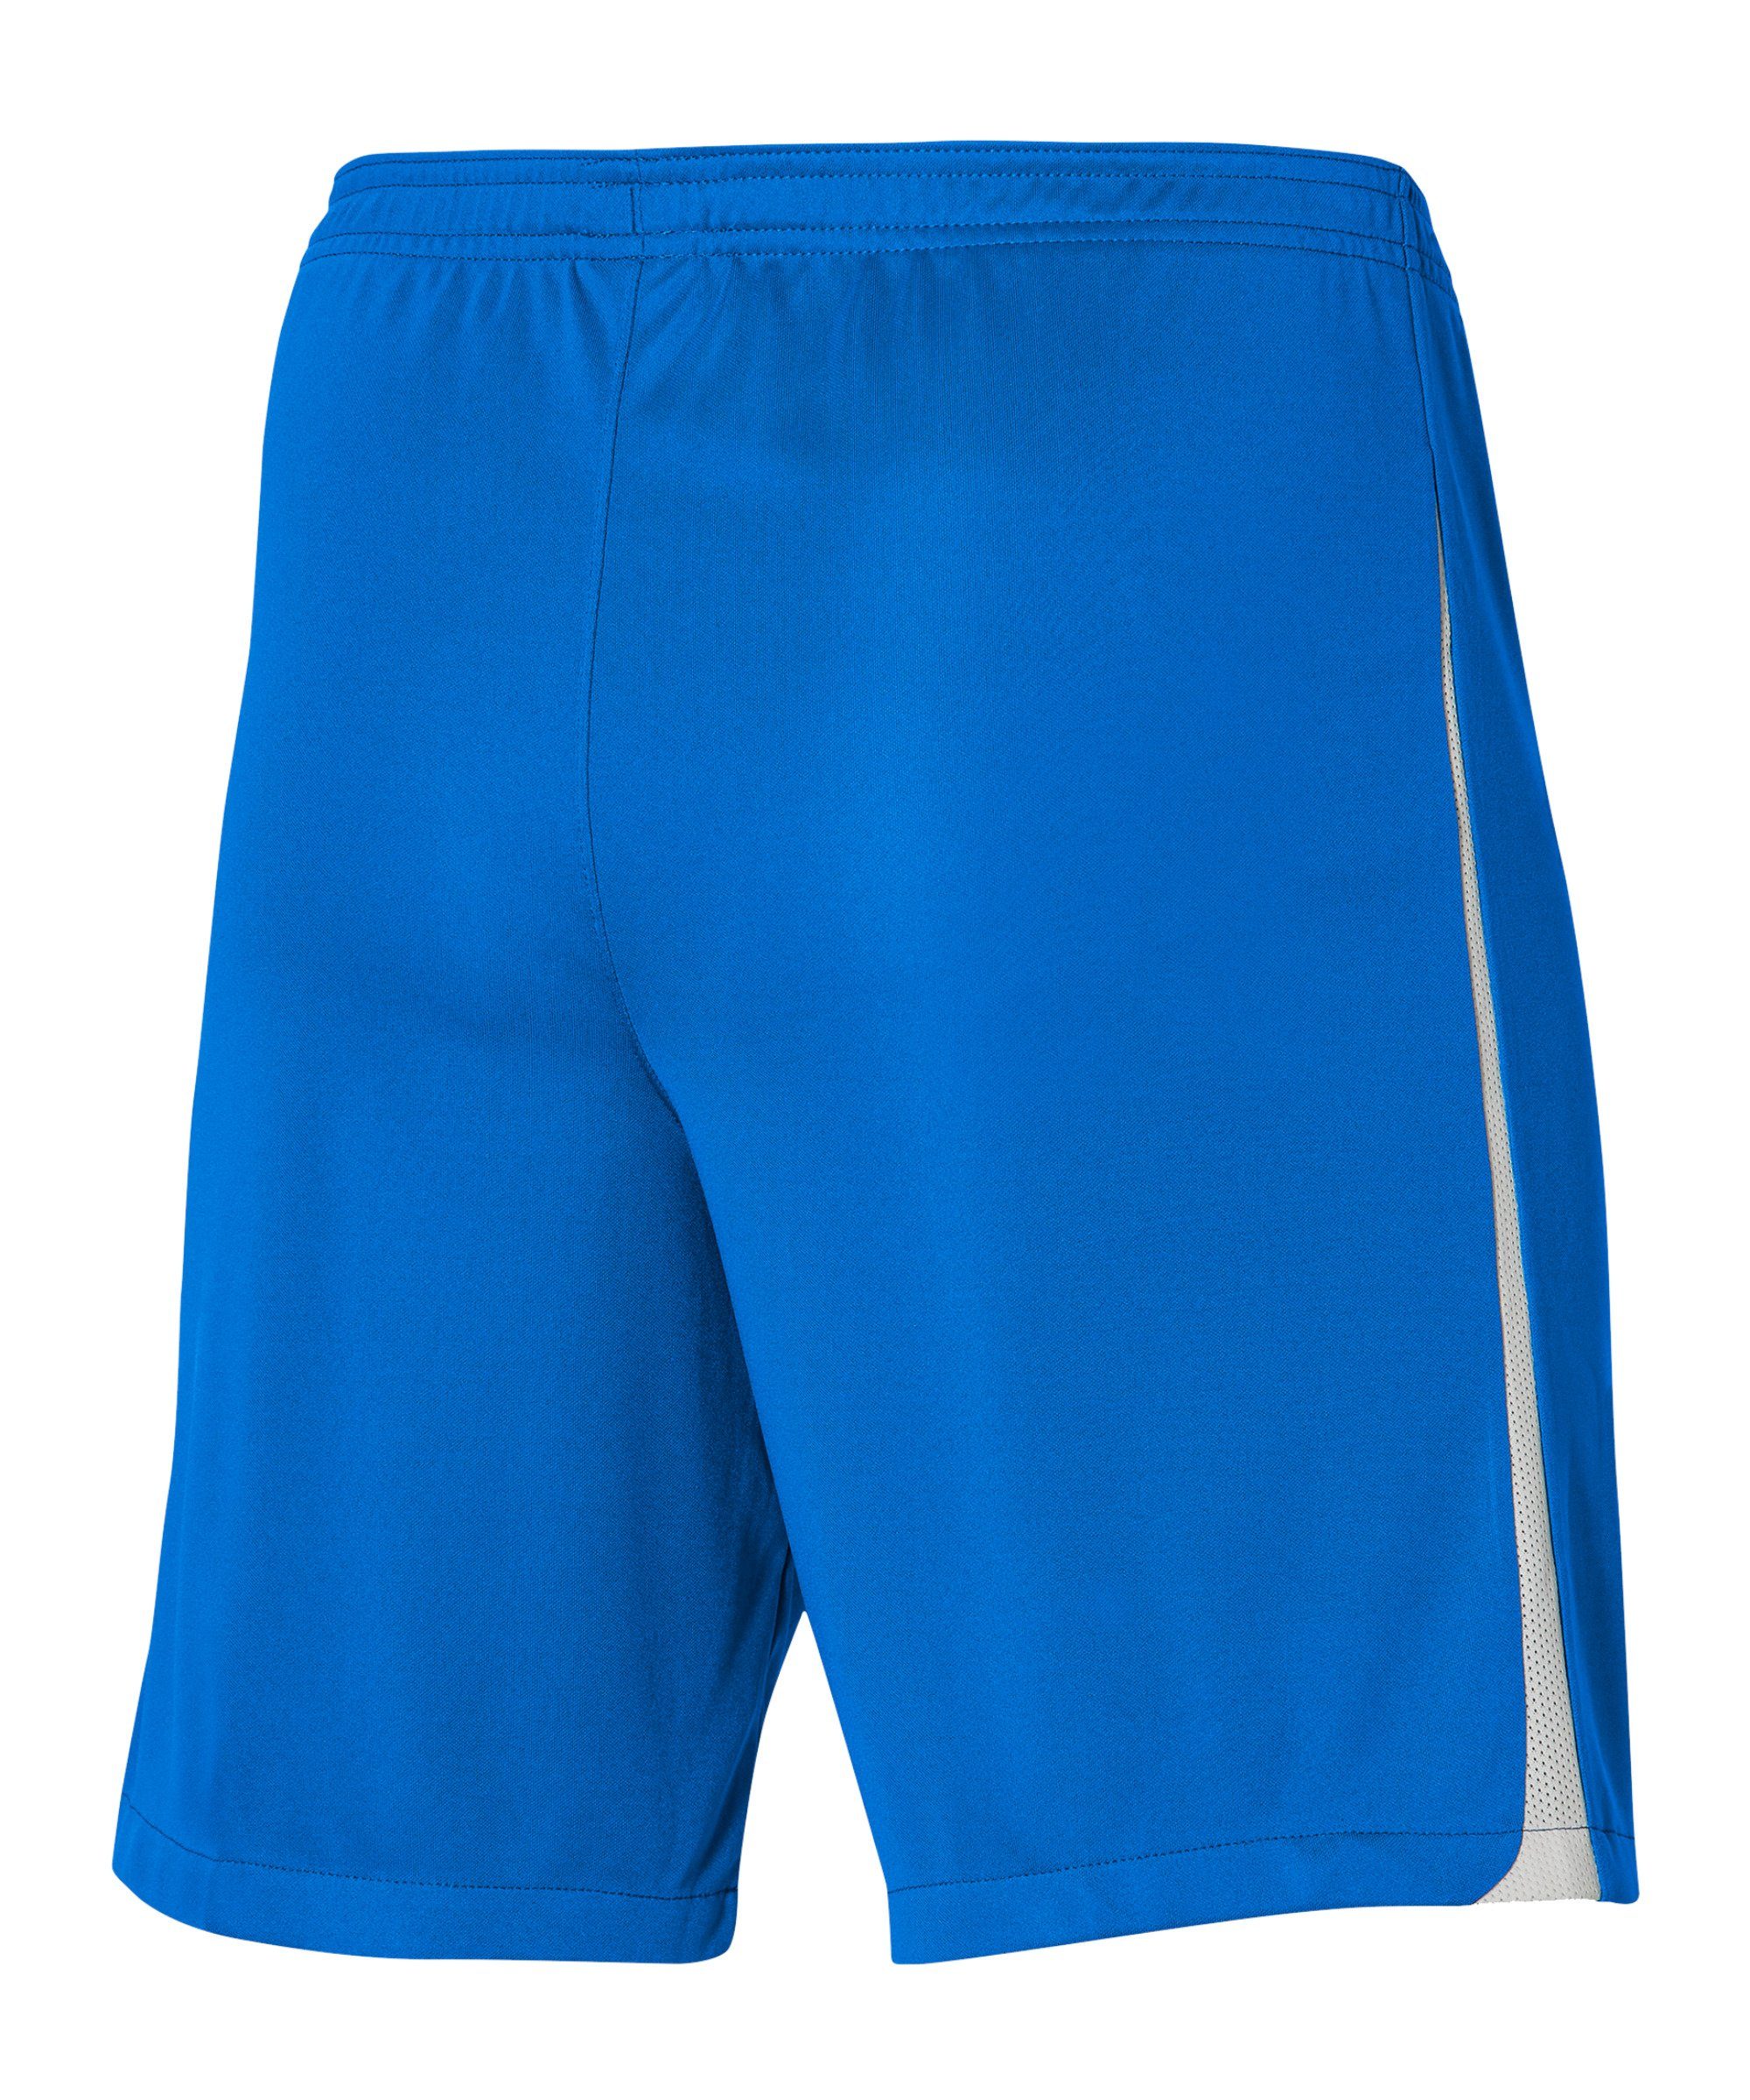 Sporthose Short Kids League III Nike dunkelblauweissweiss